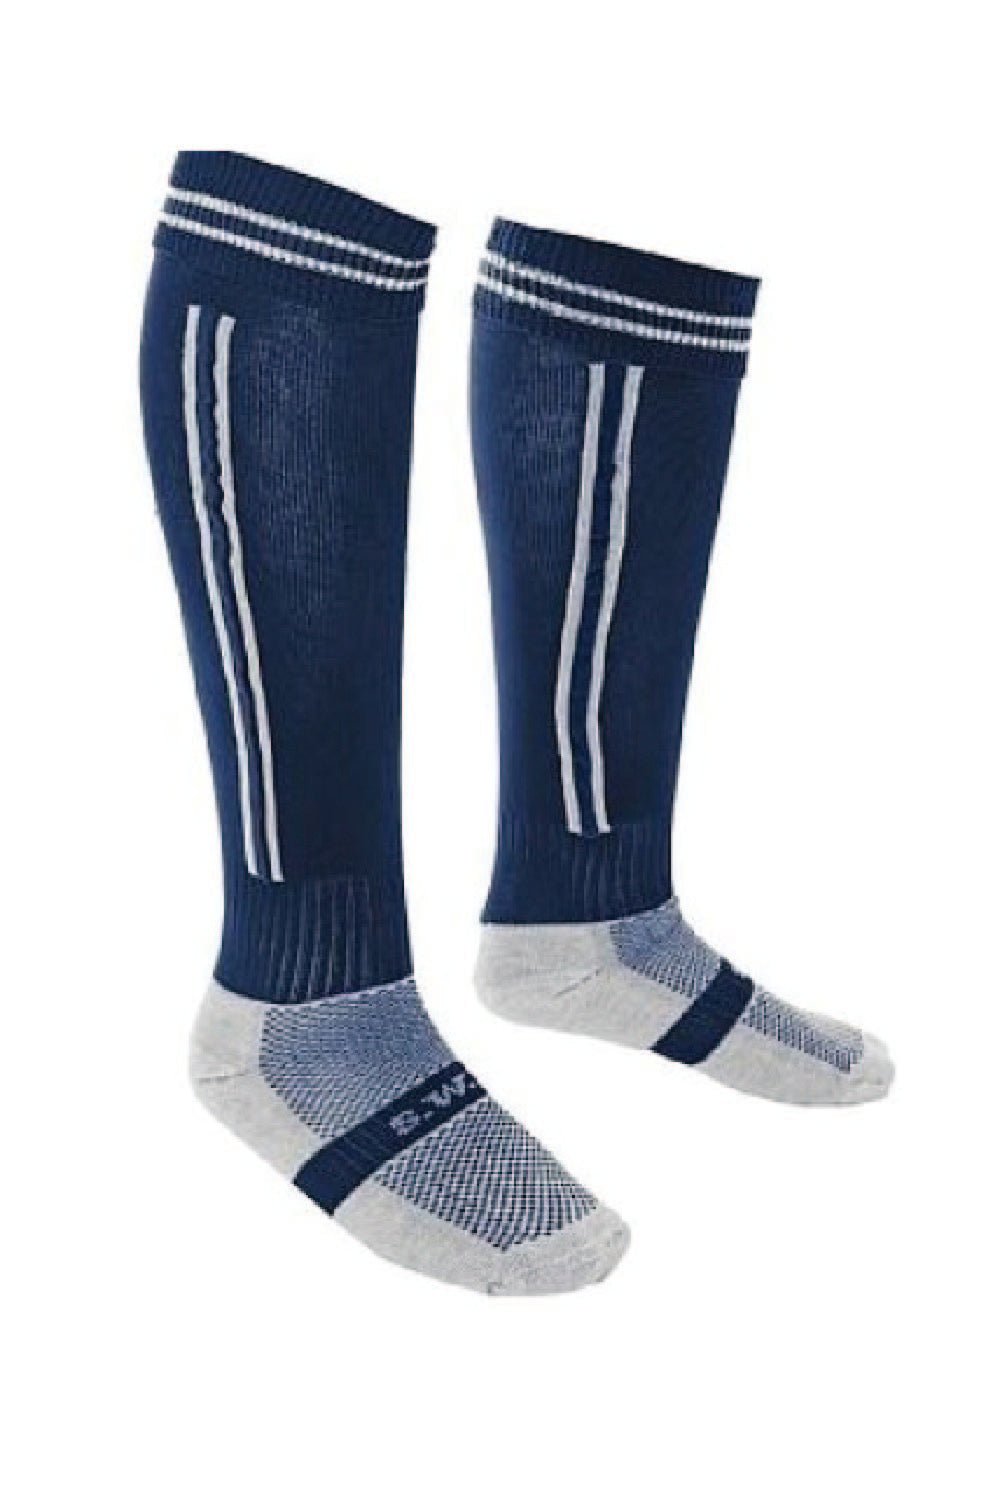 Hassenbrook School PE Sock - Uniformwise Schoolwear